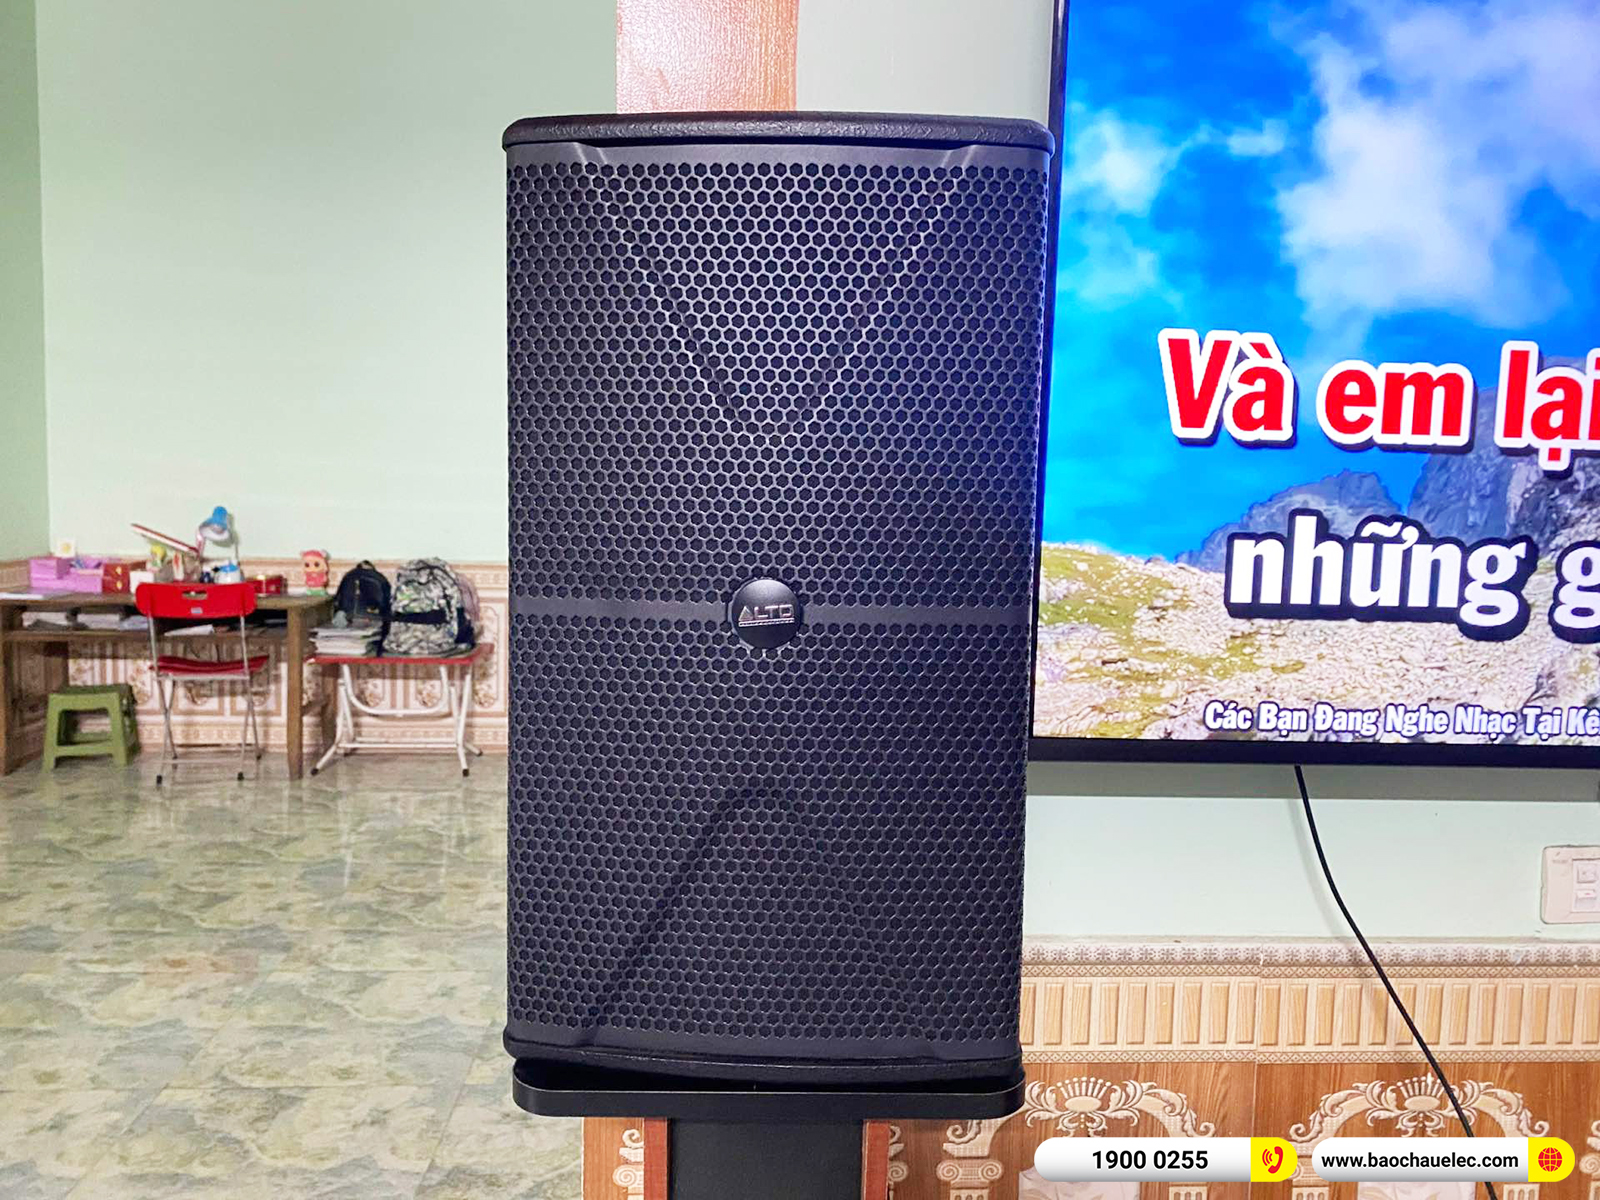 Lắp đặt dàn karaoke Alto hơn 25tr cho anh Tần tại Bắc Giang